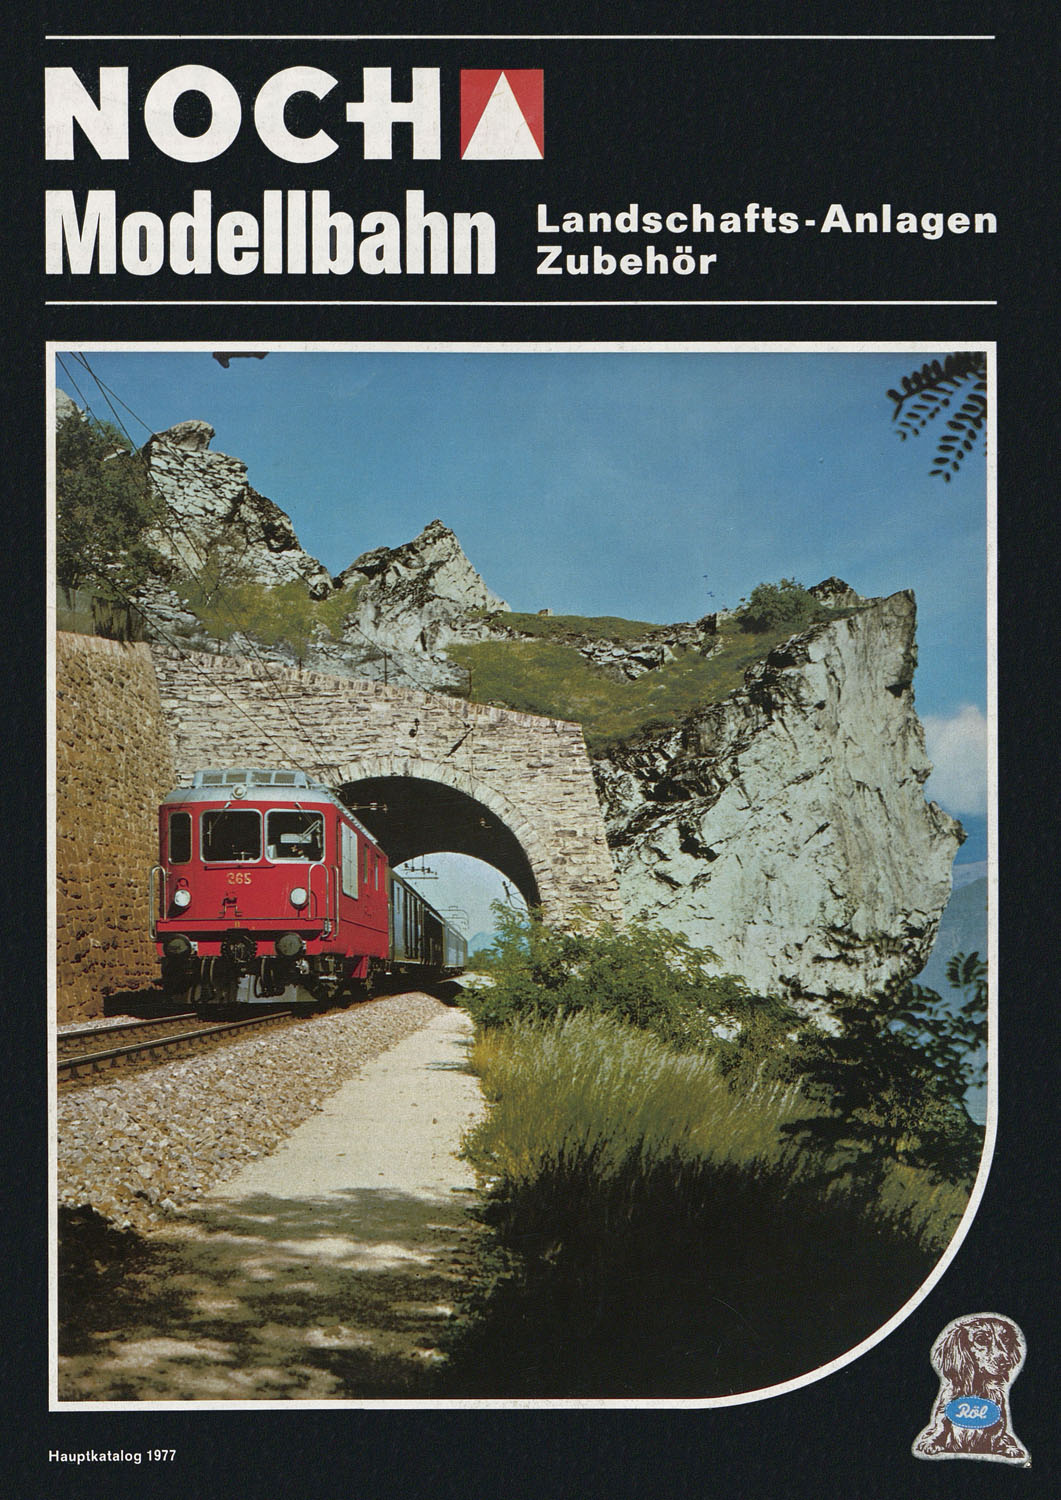 NOCH Katalog von 1977